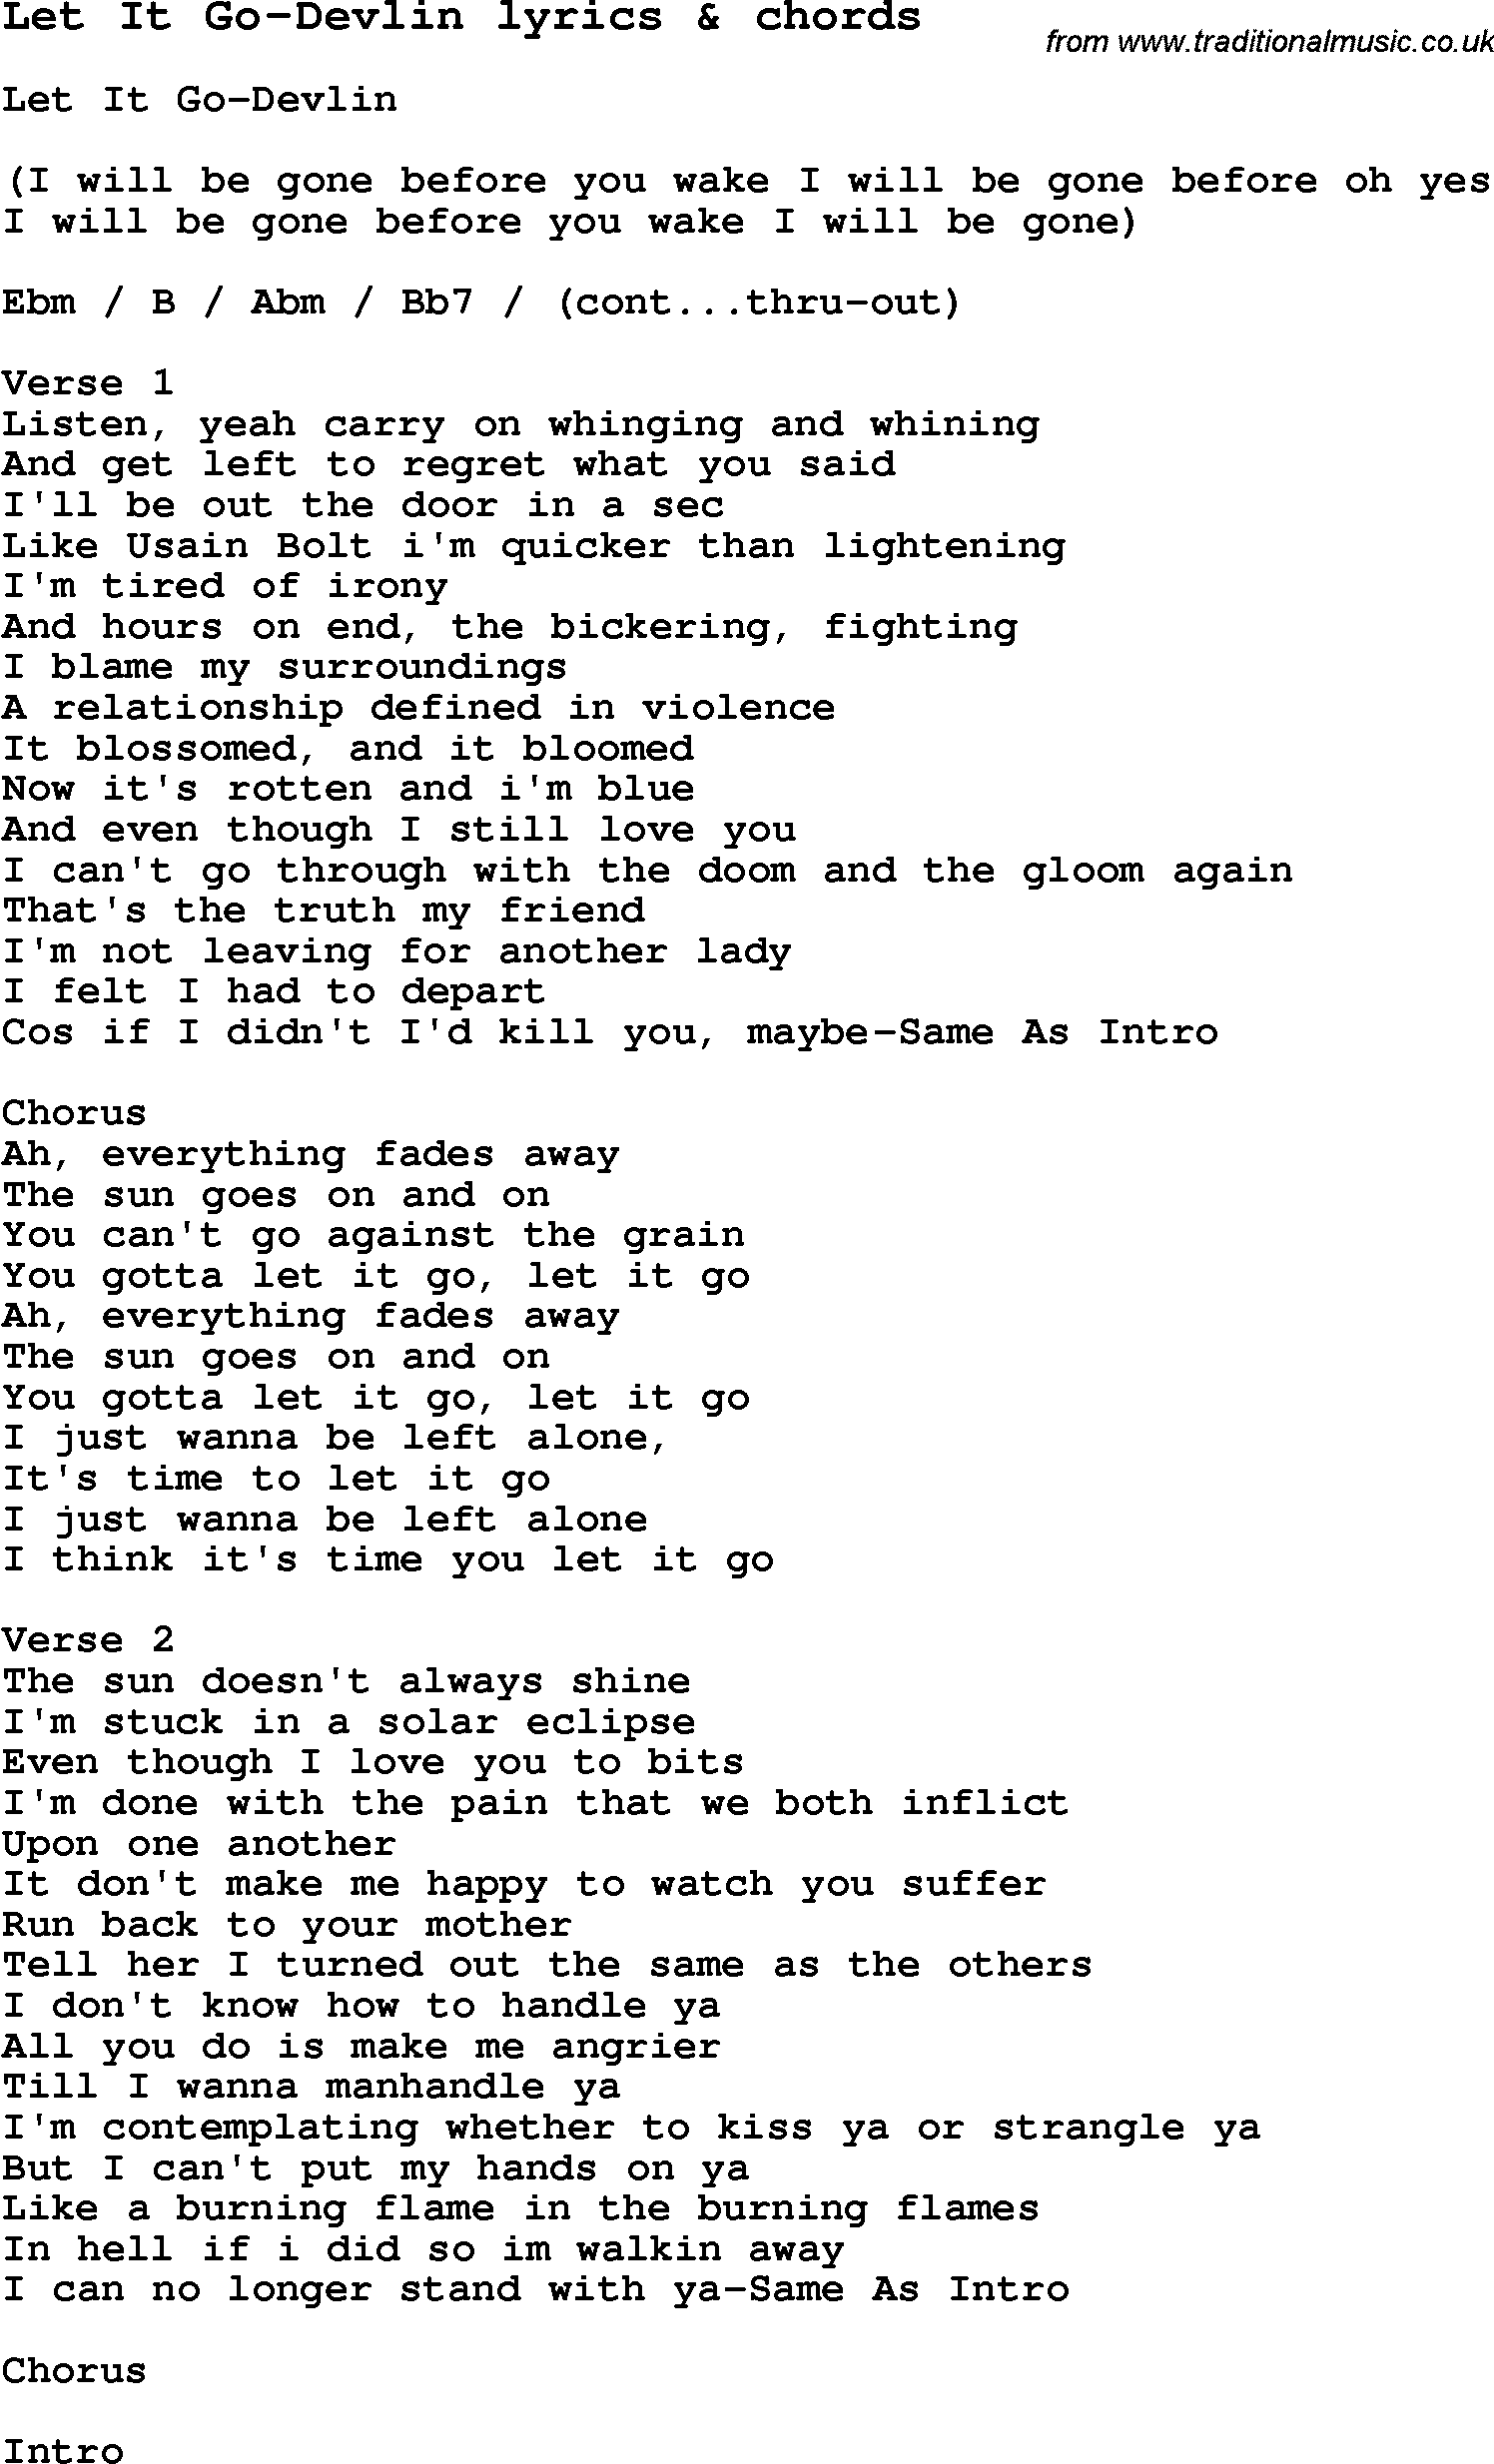 Love Song Lyrics for: Let It Go-Devlin with chords for Ukulele, Guitar Banjo etc.